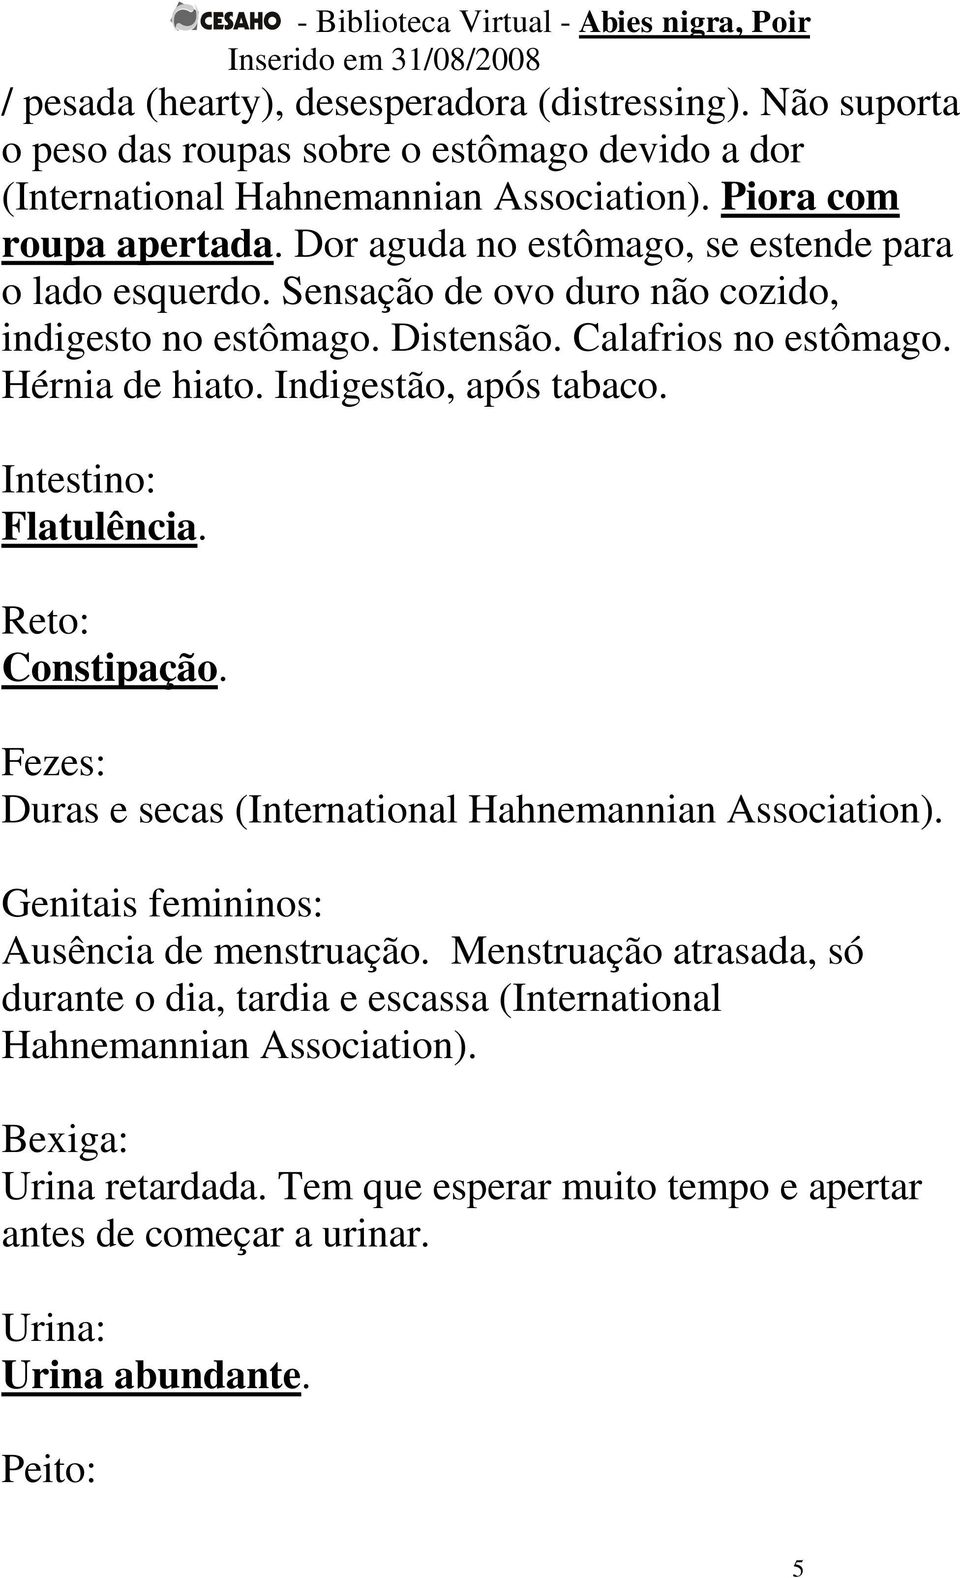 Indigestão, após tabaco. Intestino: Flatulência. Reto: Constipação. Fezes: Duras e secas (International Hahnemannian Association). Genitais femininos: Ausência de menstruação.